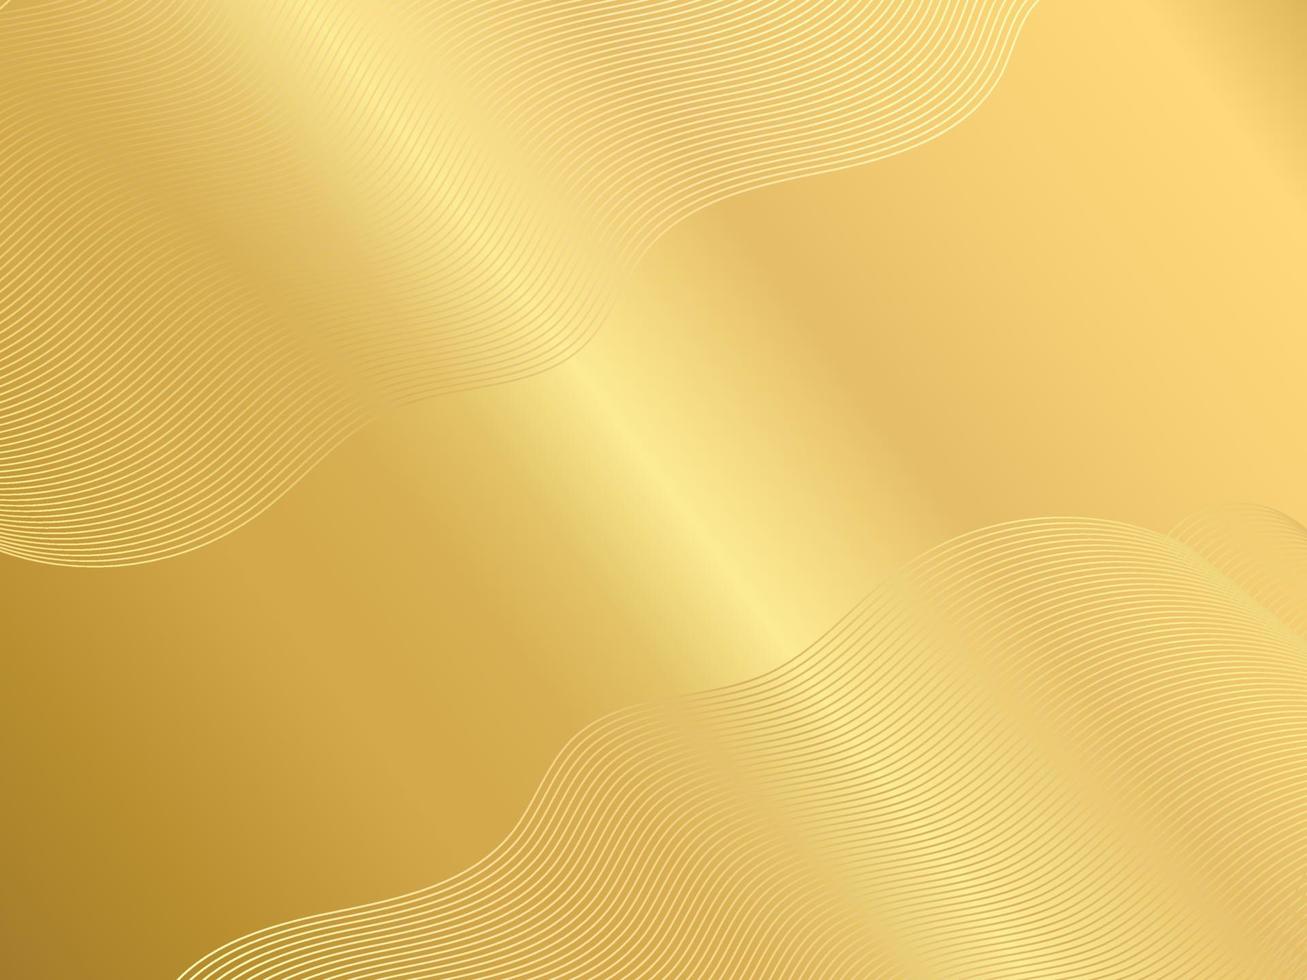 gyllene bakgrundsbild modern designkoncept vektor